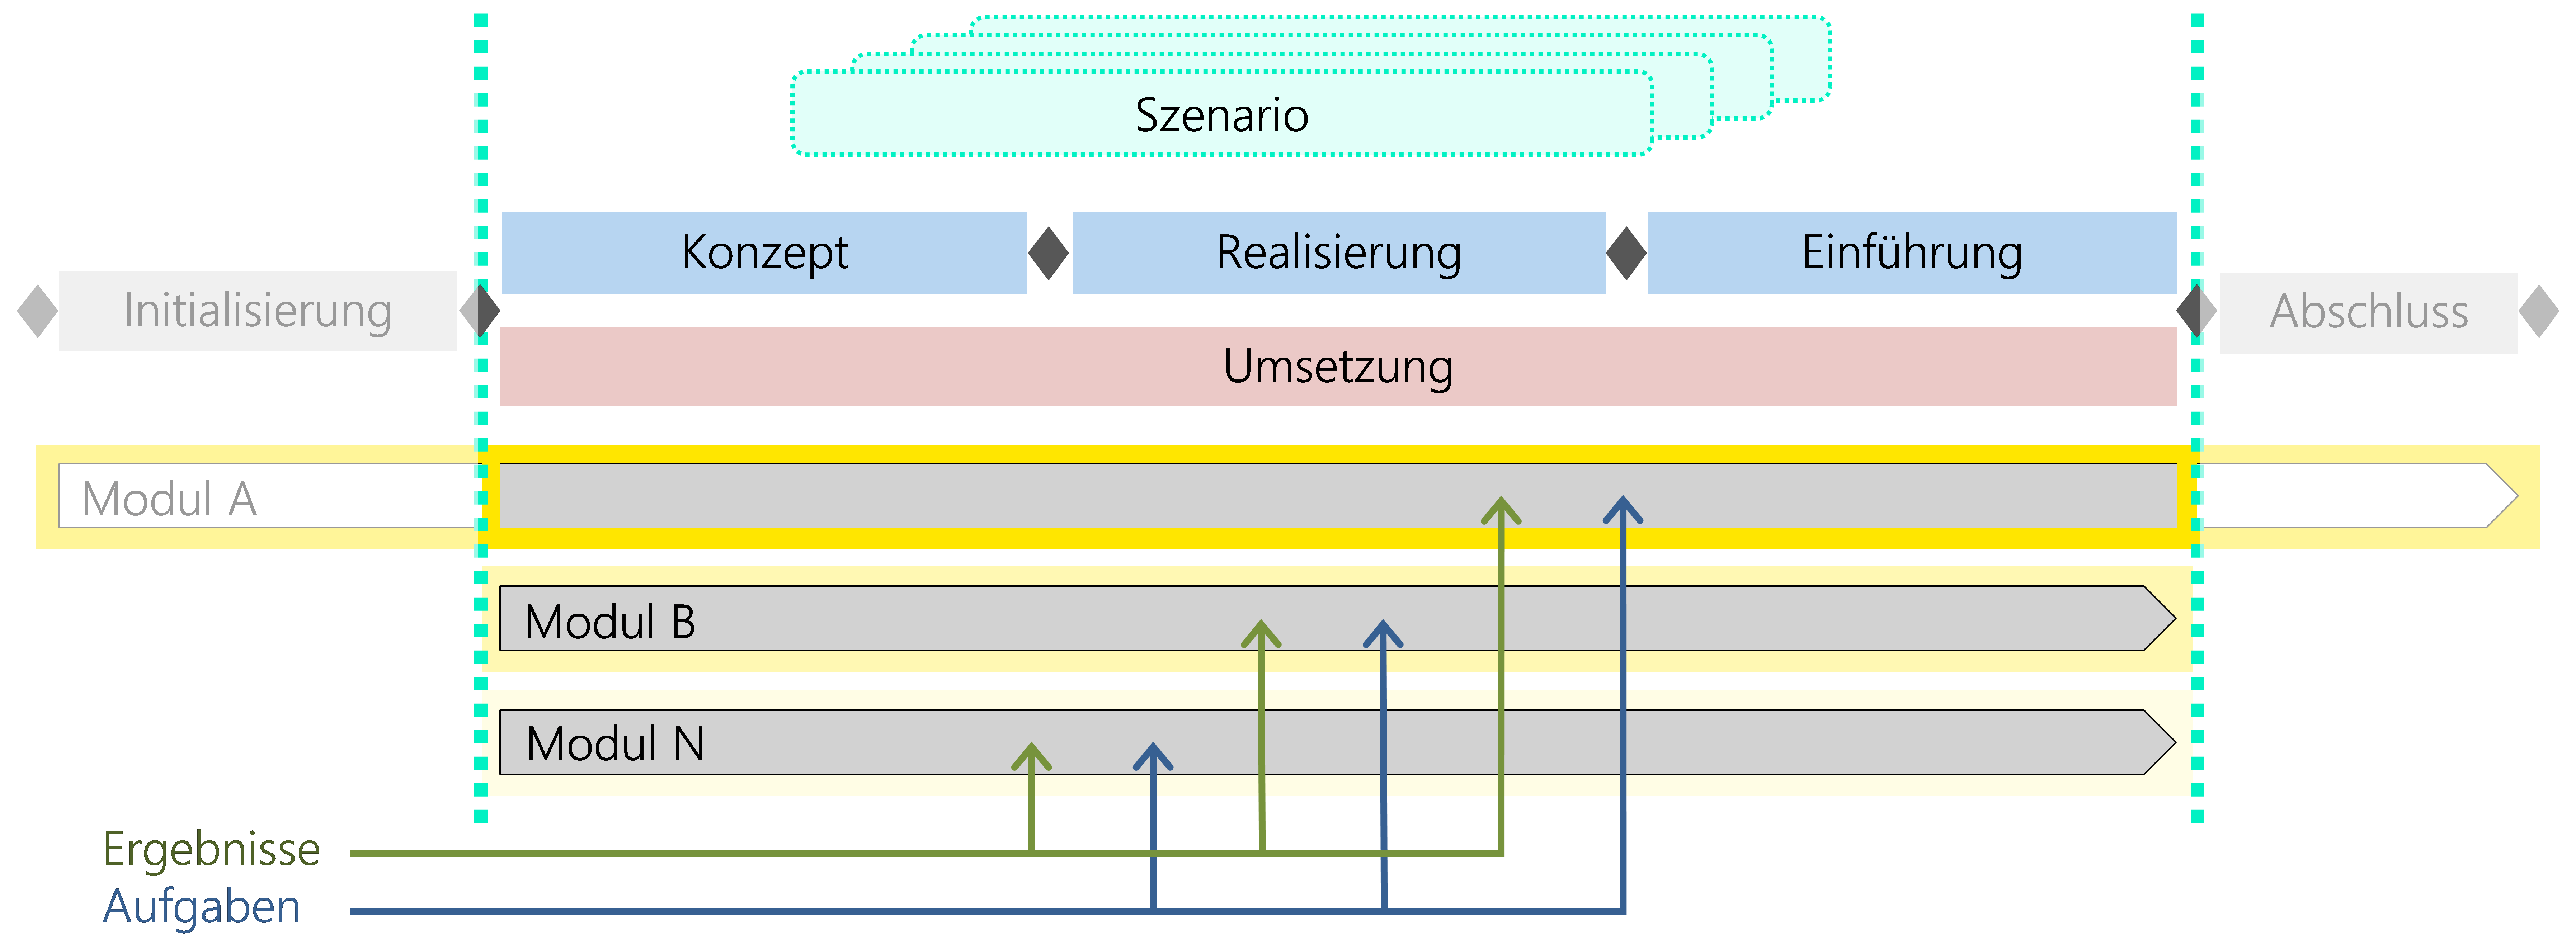 Abbildung: Mehrere Module mit Aufgaben und Ergebnissen als Basis für ein Szenario